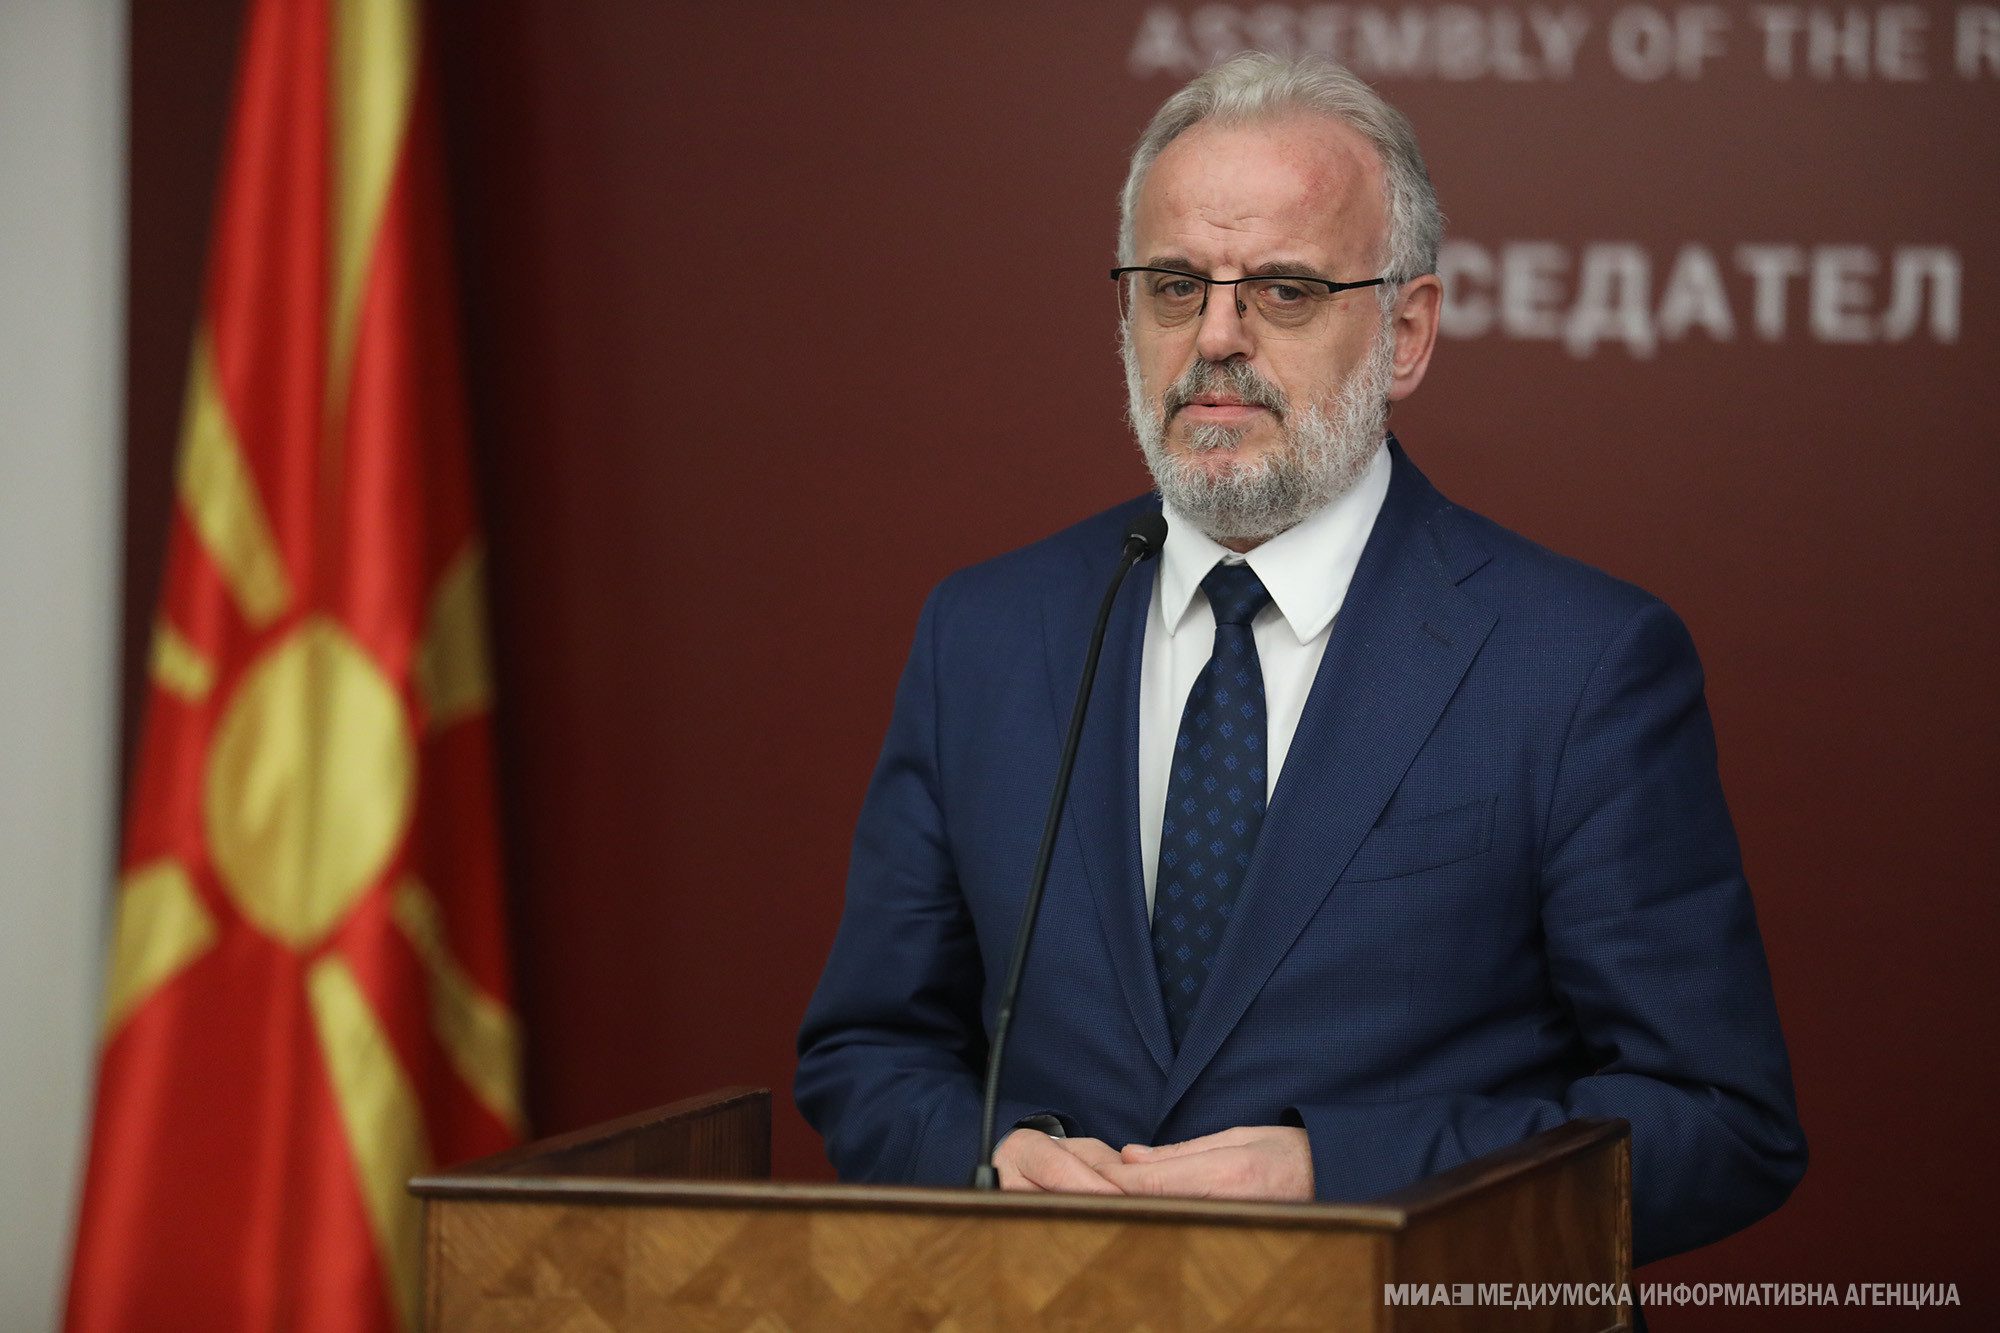 Raportohet se Talat Xhaferi do të jetë kryeministër i Maqedonisë së Veriut